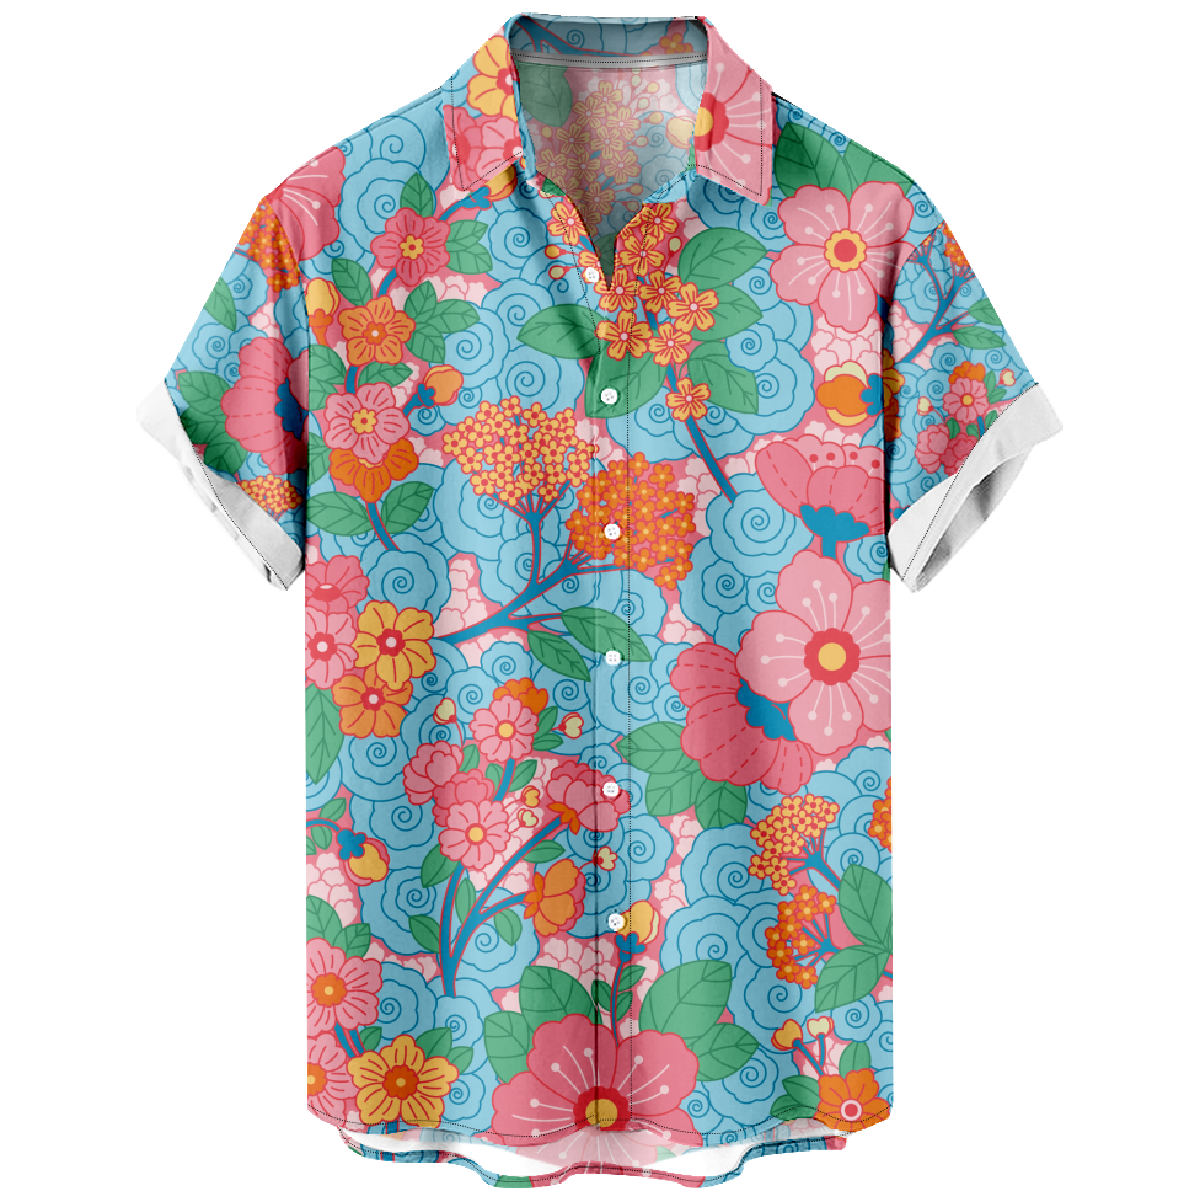 Floral Hawaiian Shirt Men's Tropical Flower Print Button Up Shirt Summer Tops